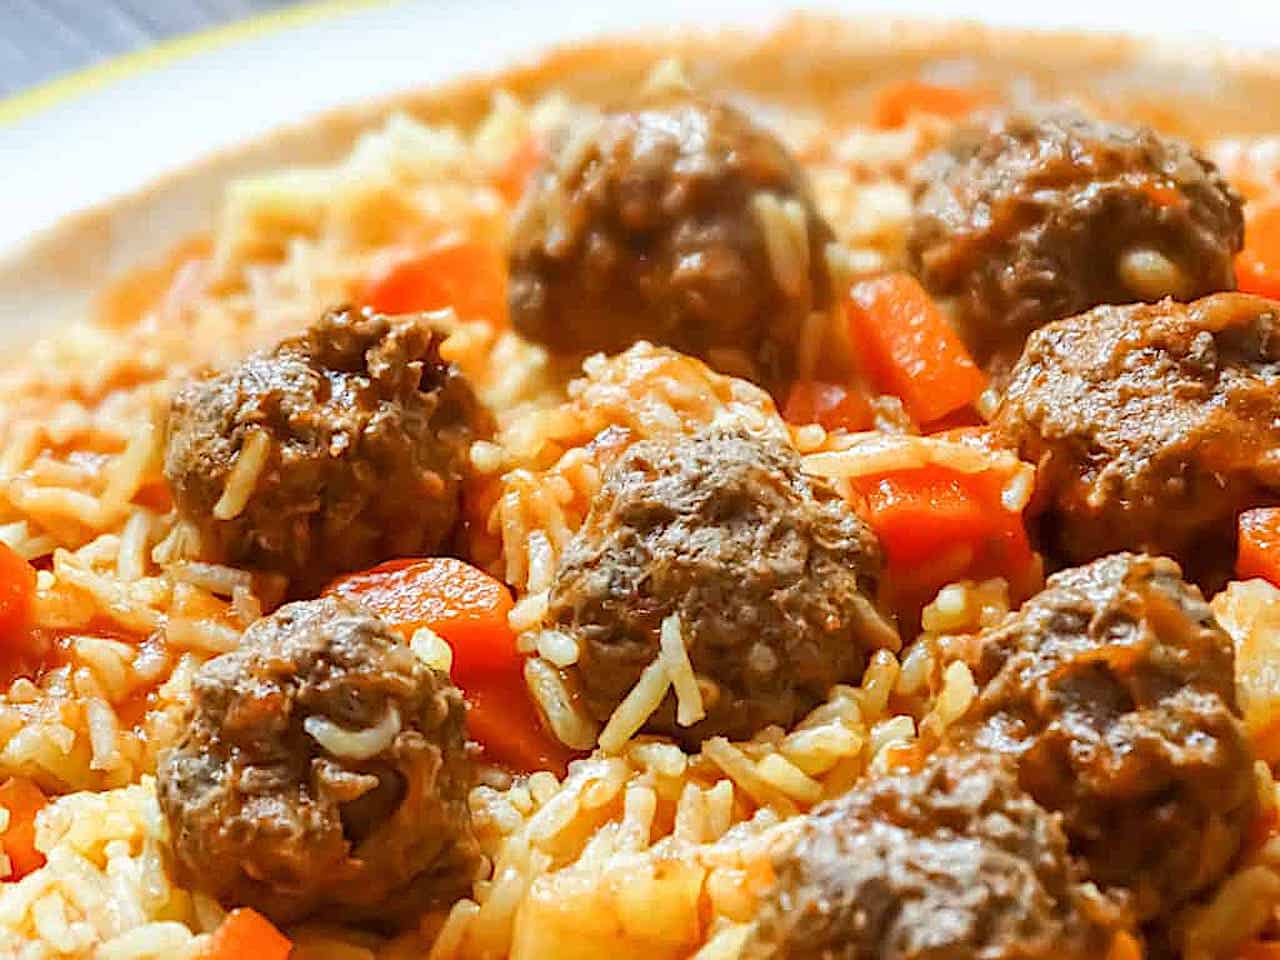 Syrian Kebab Hindi with lamb meatballs, potatoes, carrots, and basmati rice